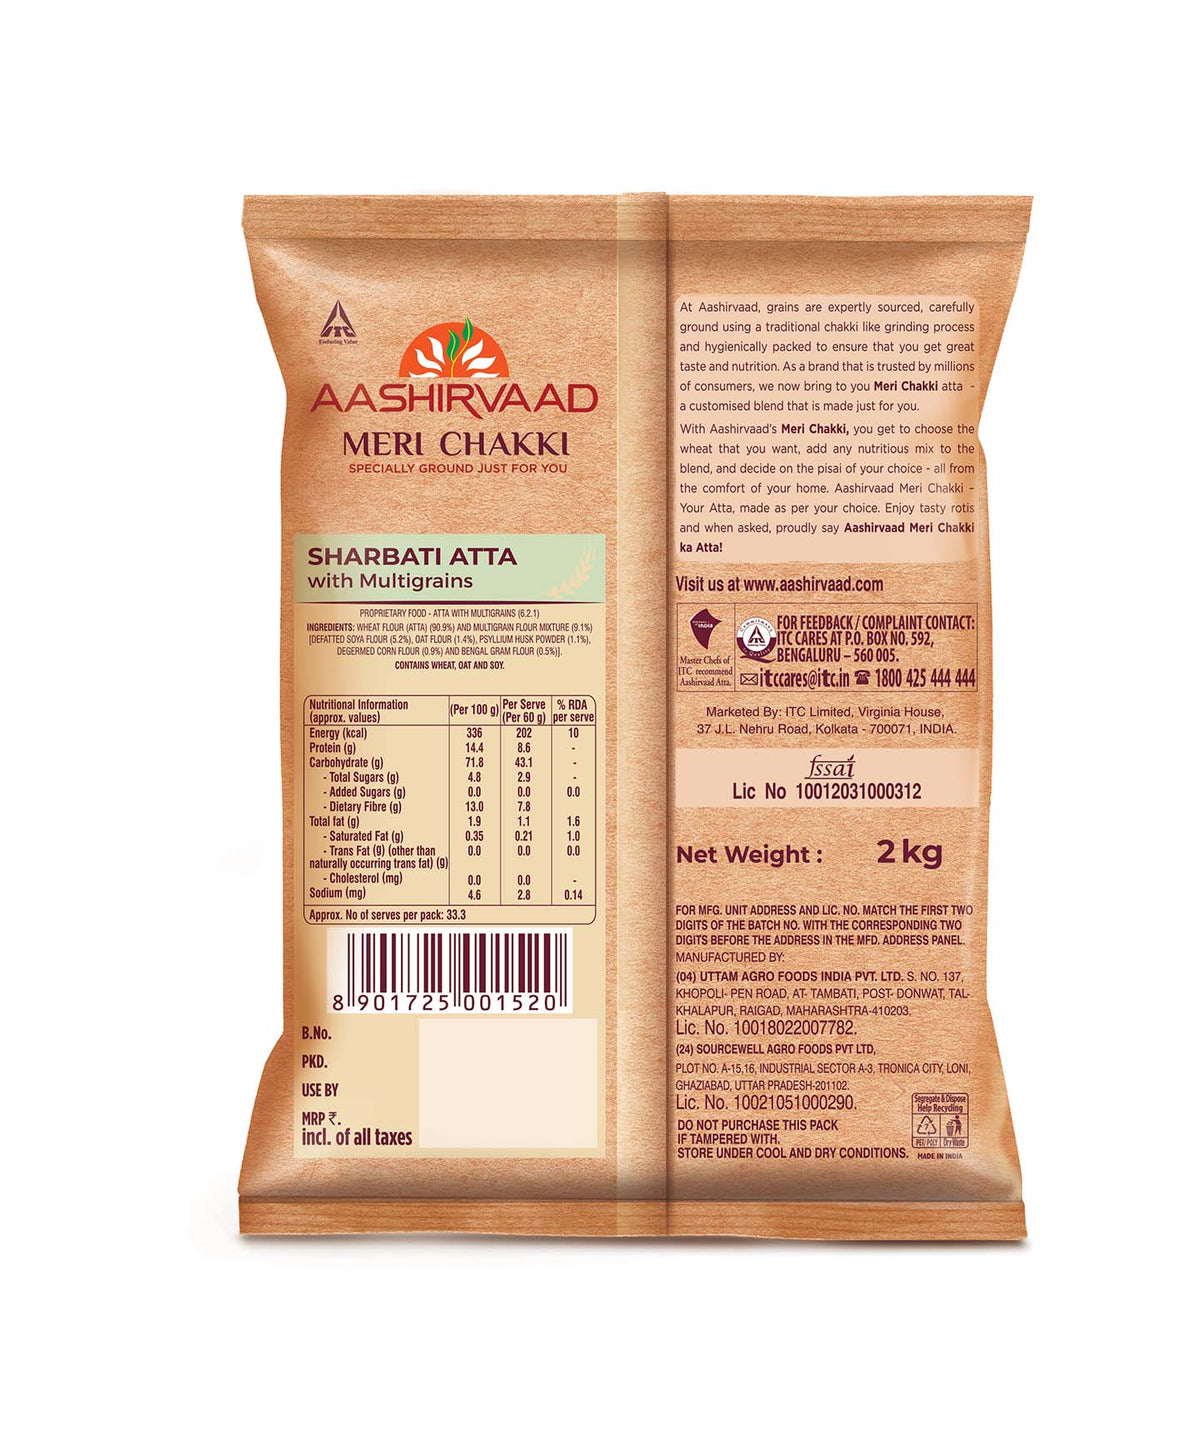 Sharbati Wheat / Multigrain Mix